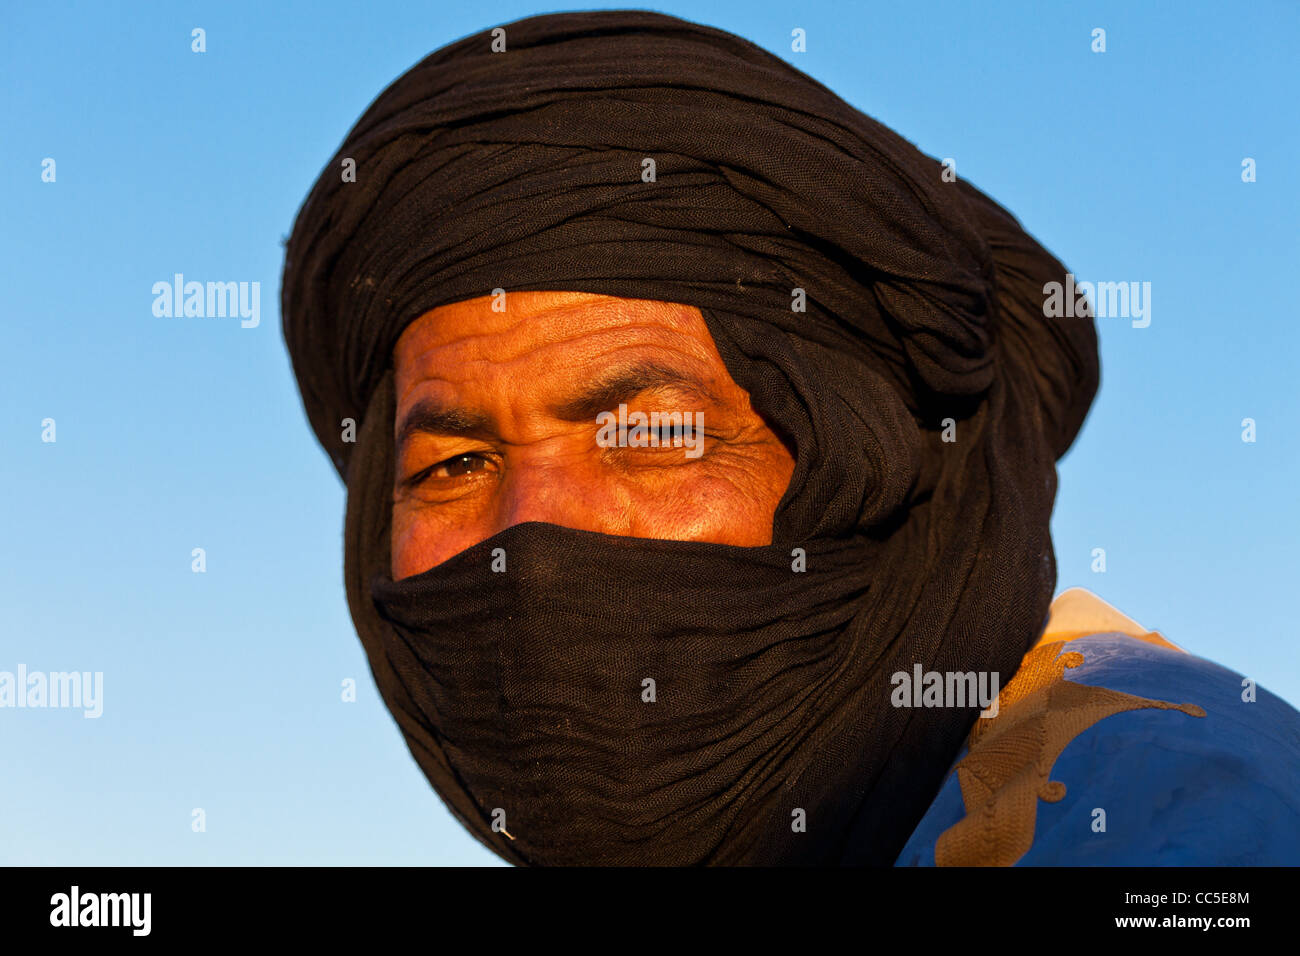 Portrait d'un homme vêtu de vêtements traditionnels bédouins, Marrakech, Maroc Banque D'Images